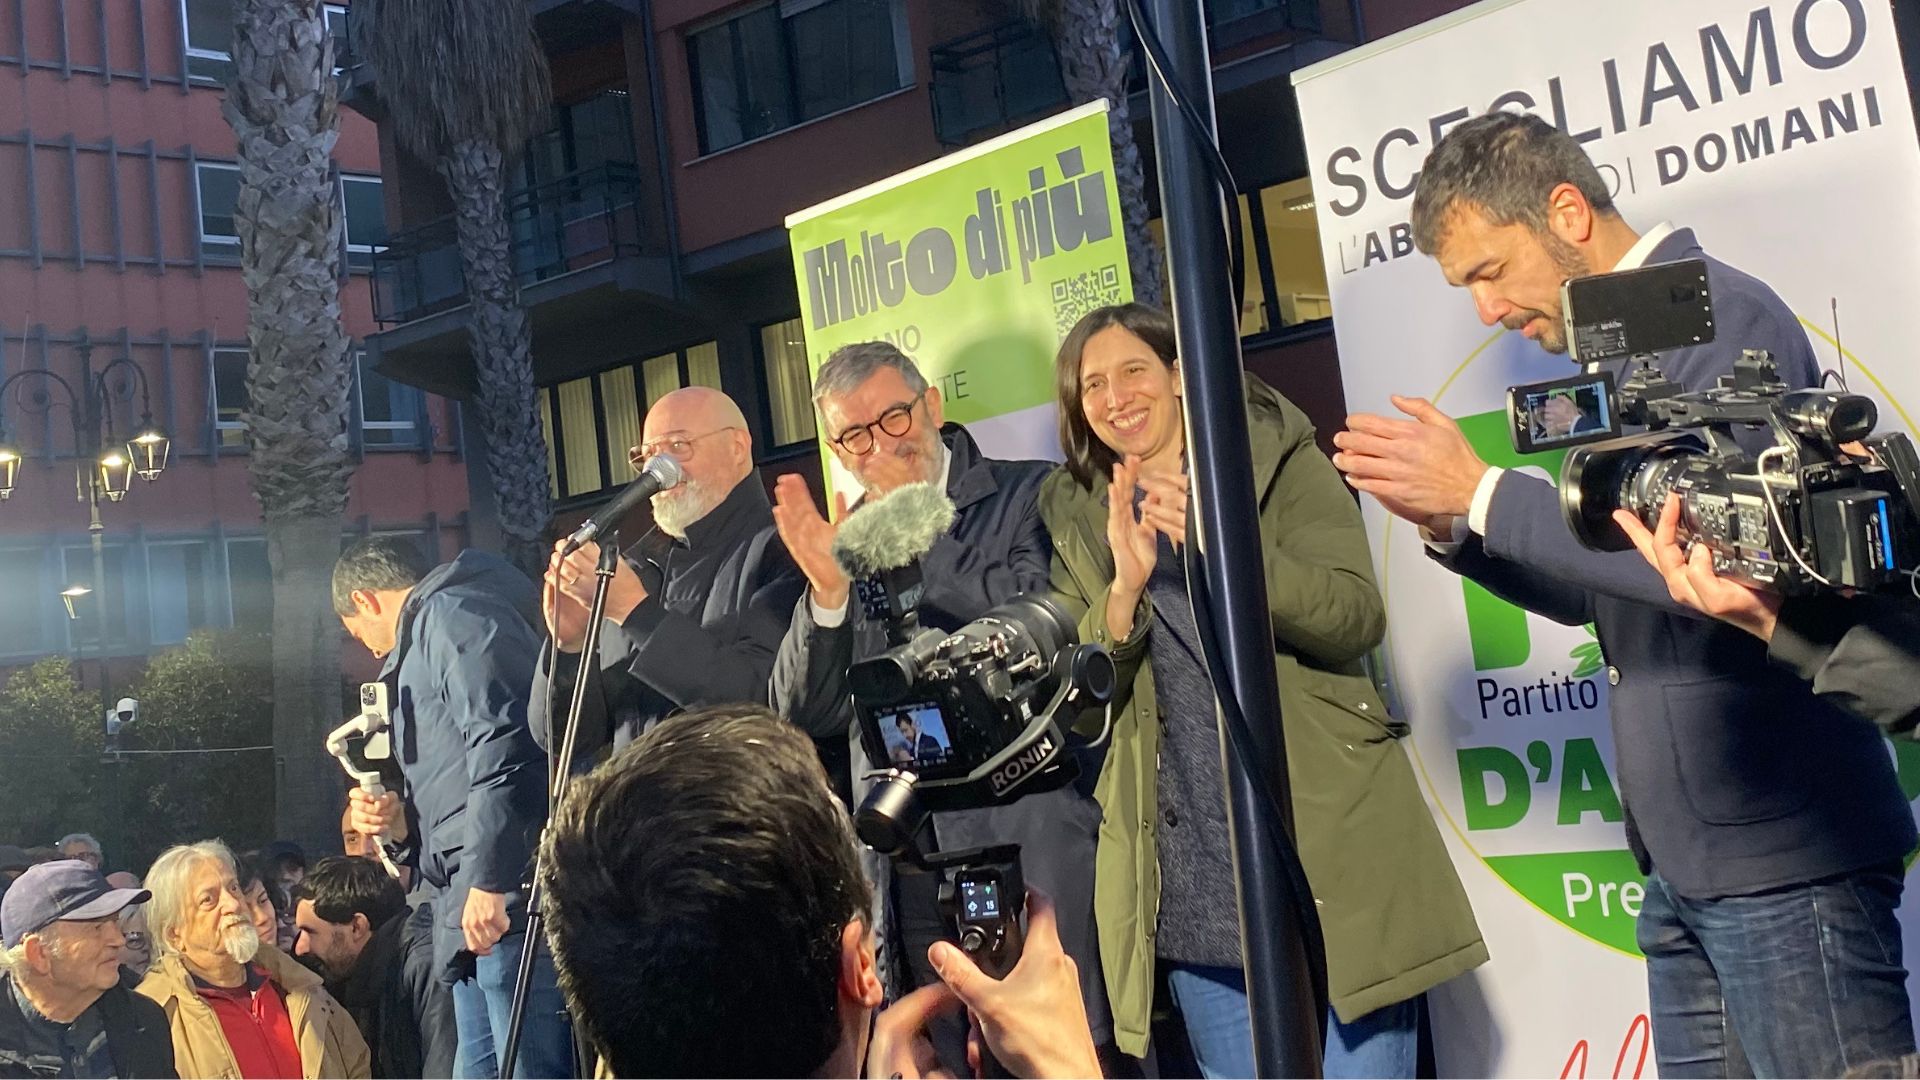 Schlein e Bonaccini a Pescara per sostenere D'Amico